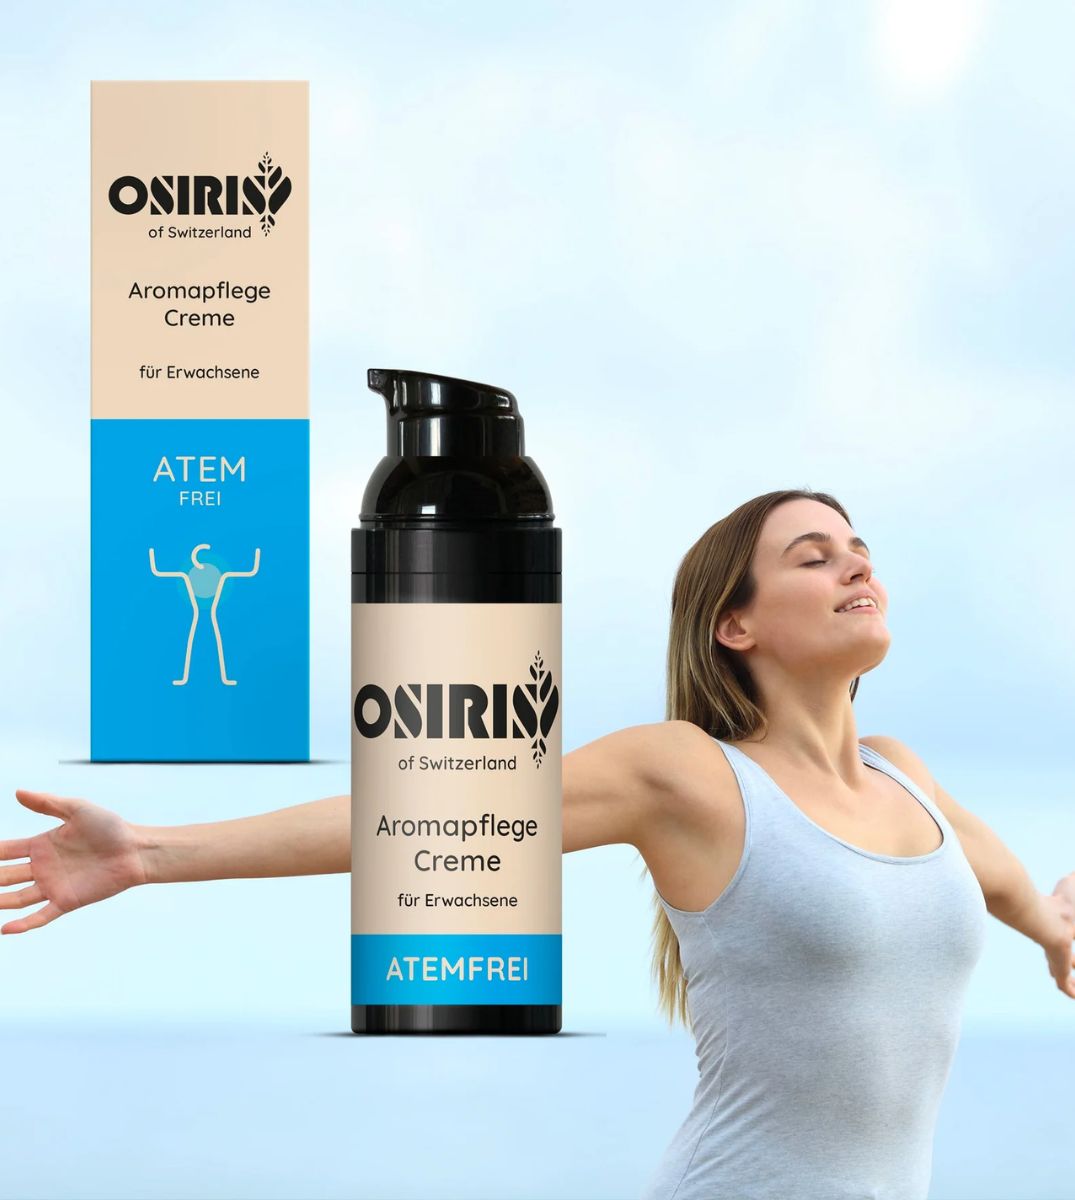 Frau genießt das freie Atmen mit OSIRIS Atemfrei Aromapflege Creme